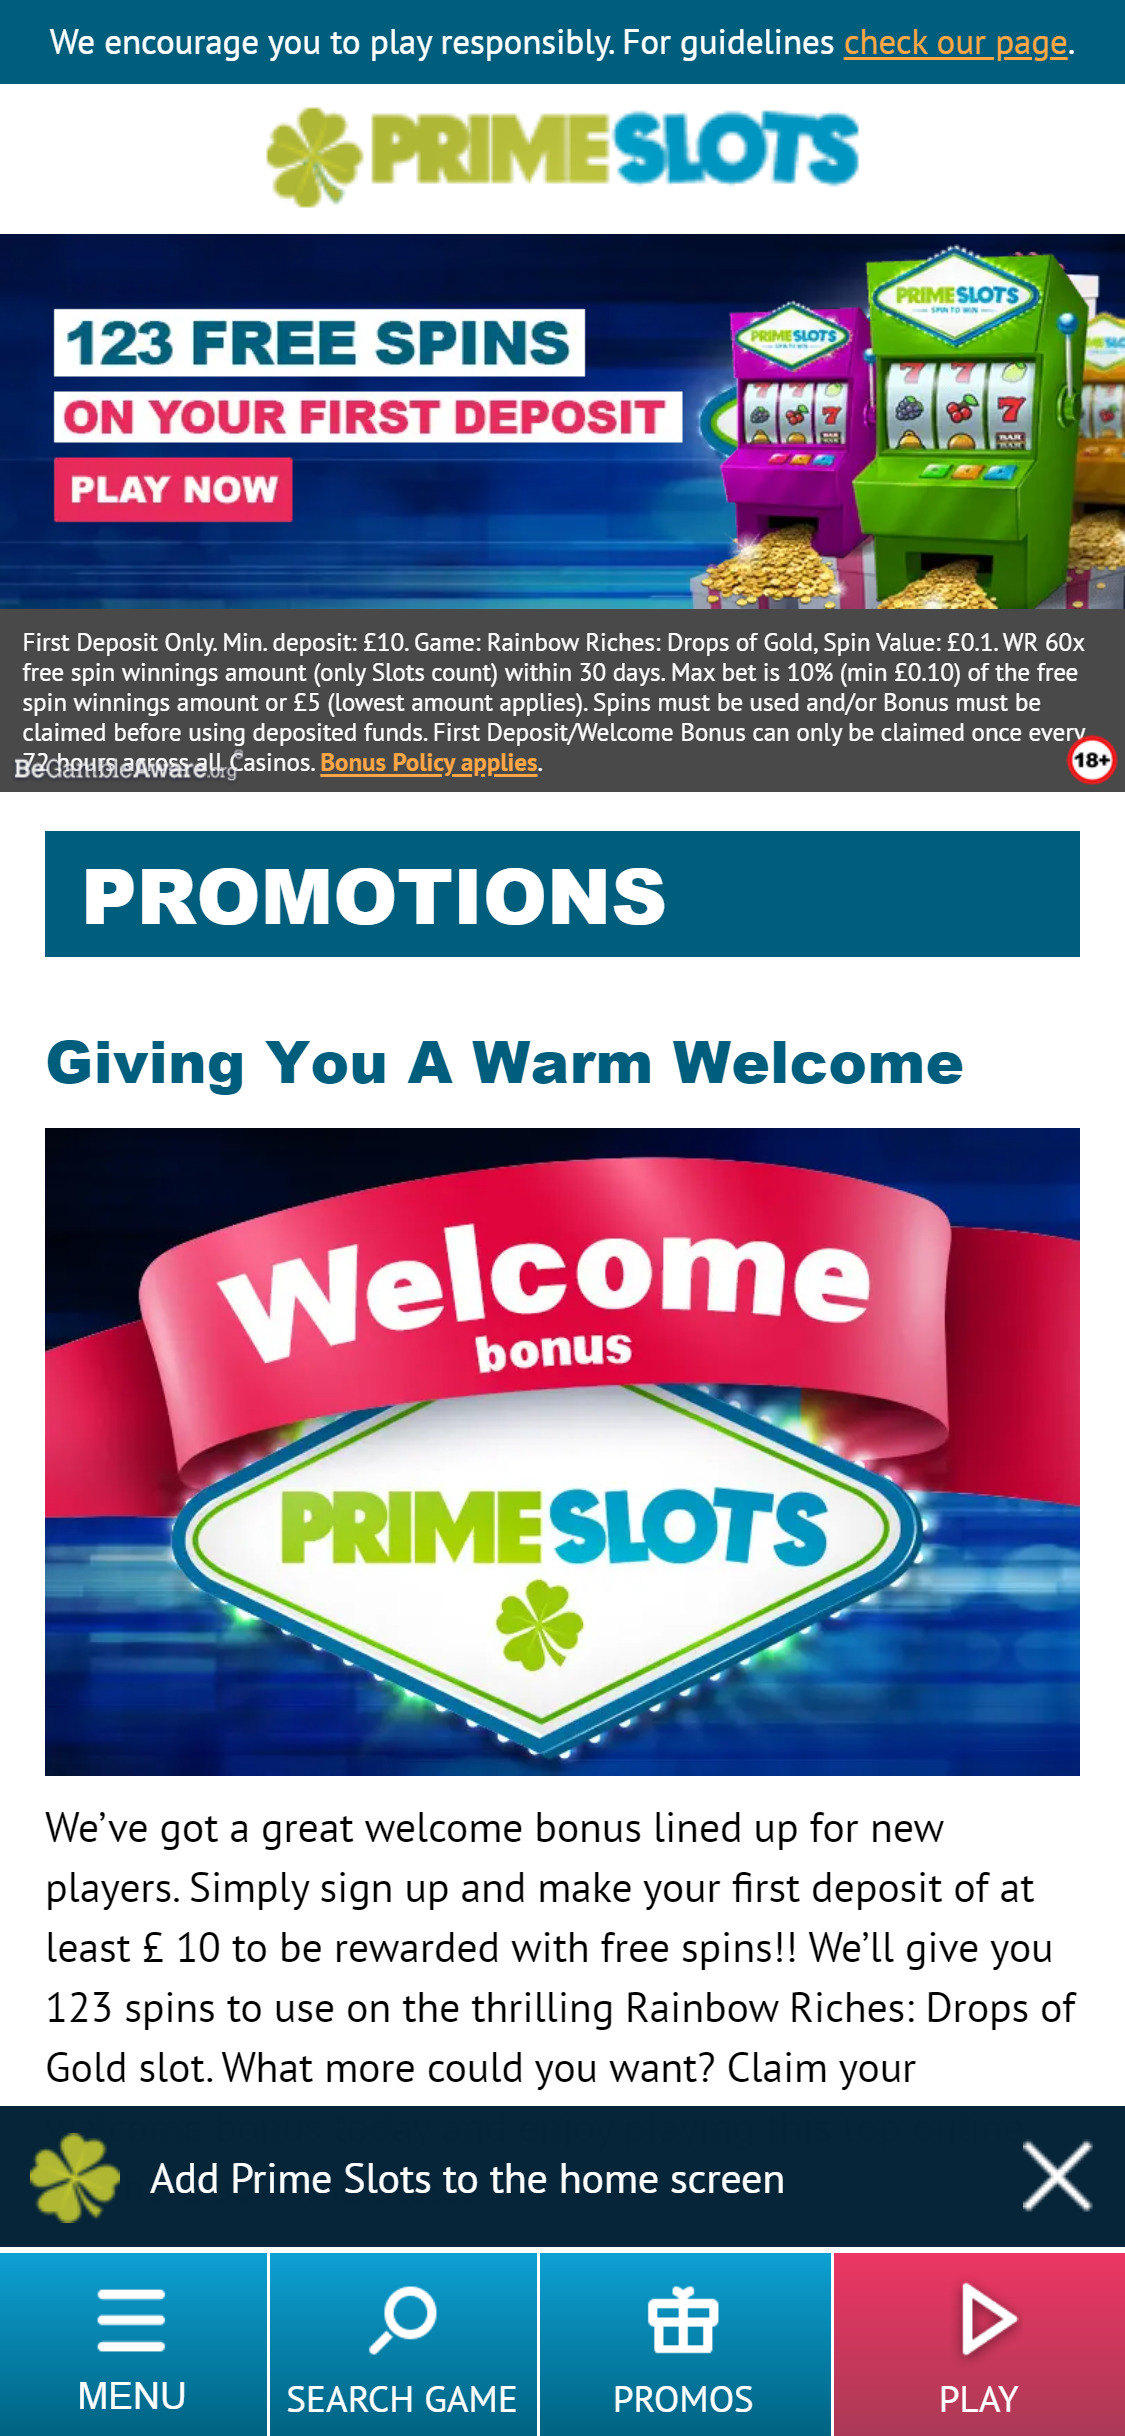 Prime Slots UK Casino Mobile No Deposit Bonus Review